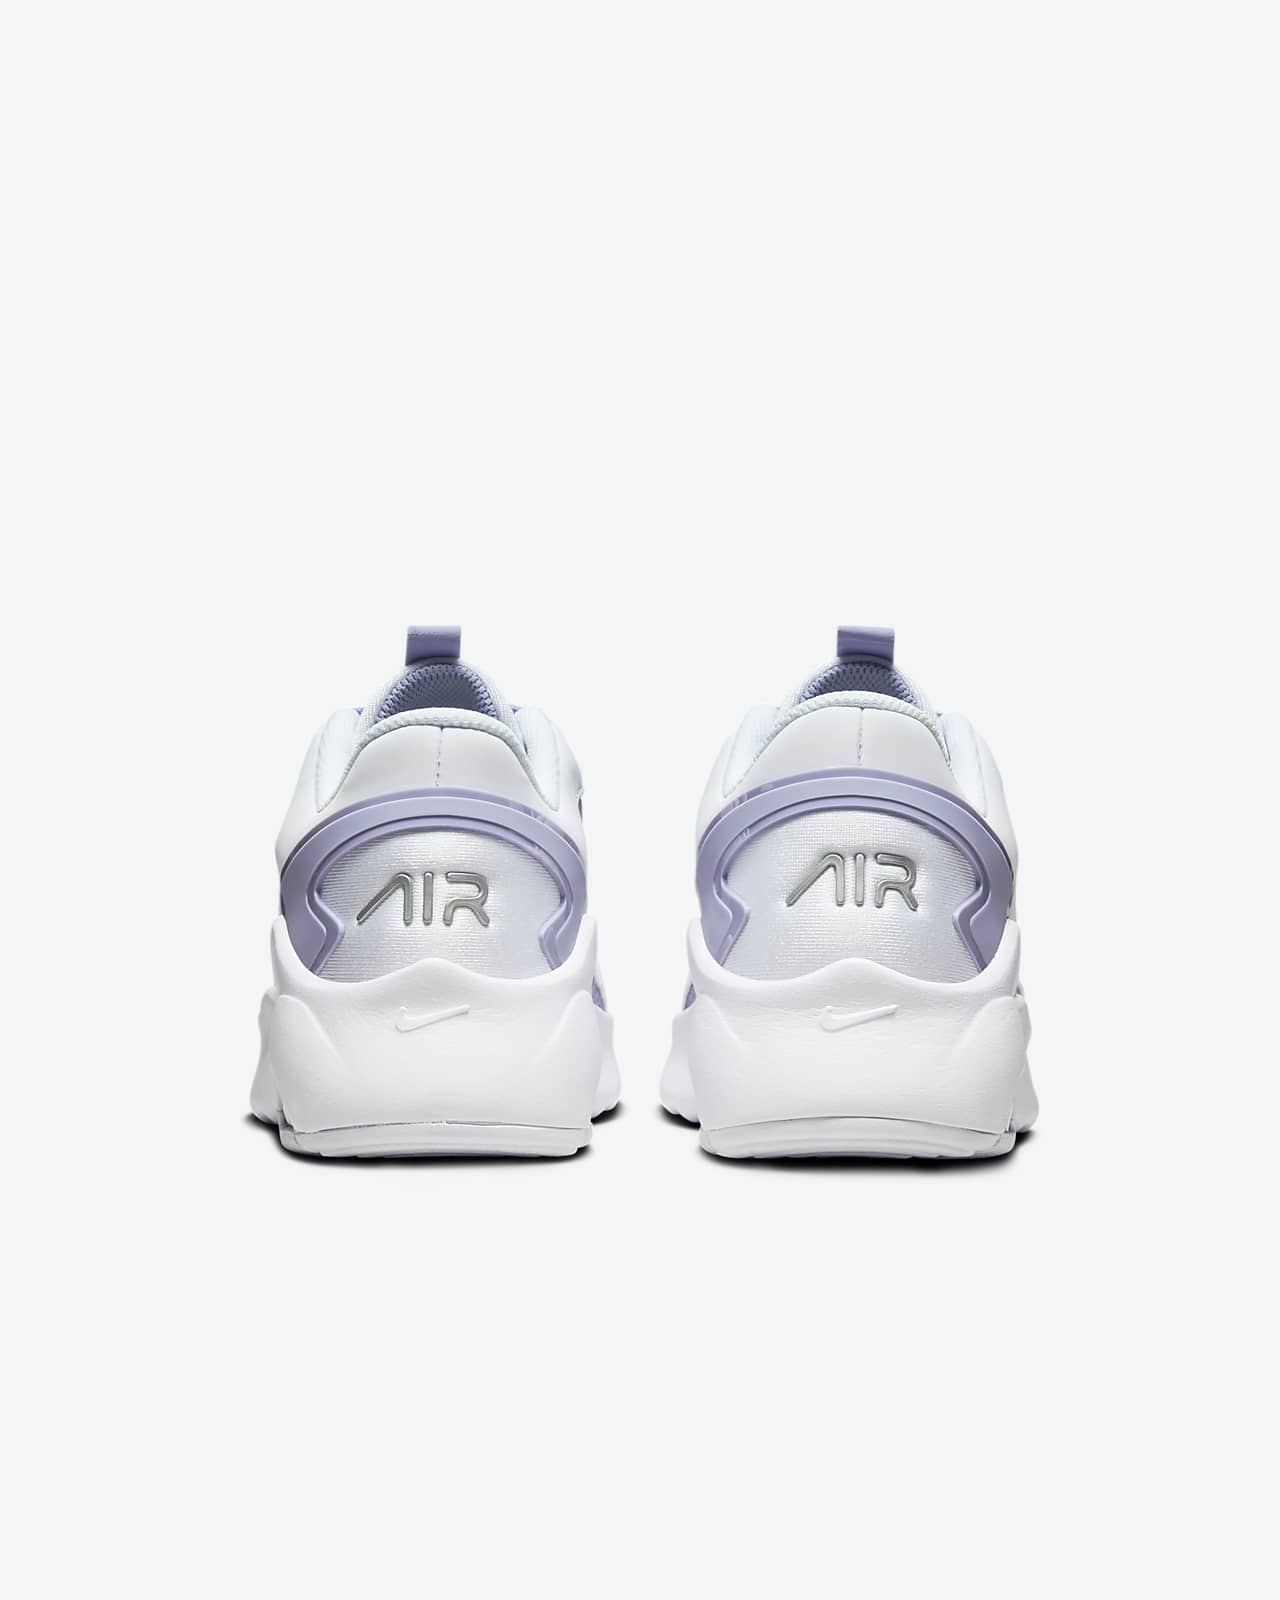 Max Bolt Nike Women\'s Shoes. Air